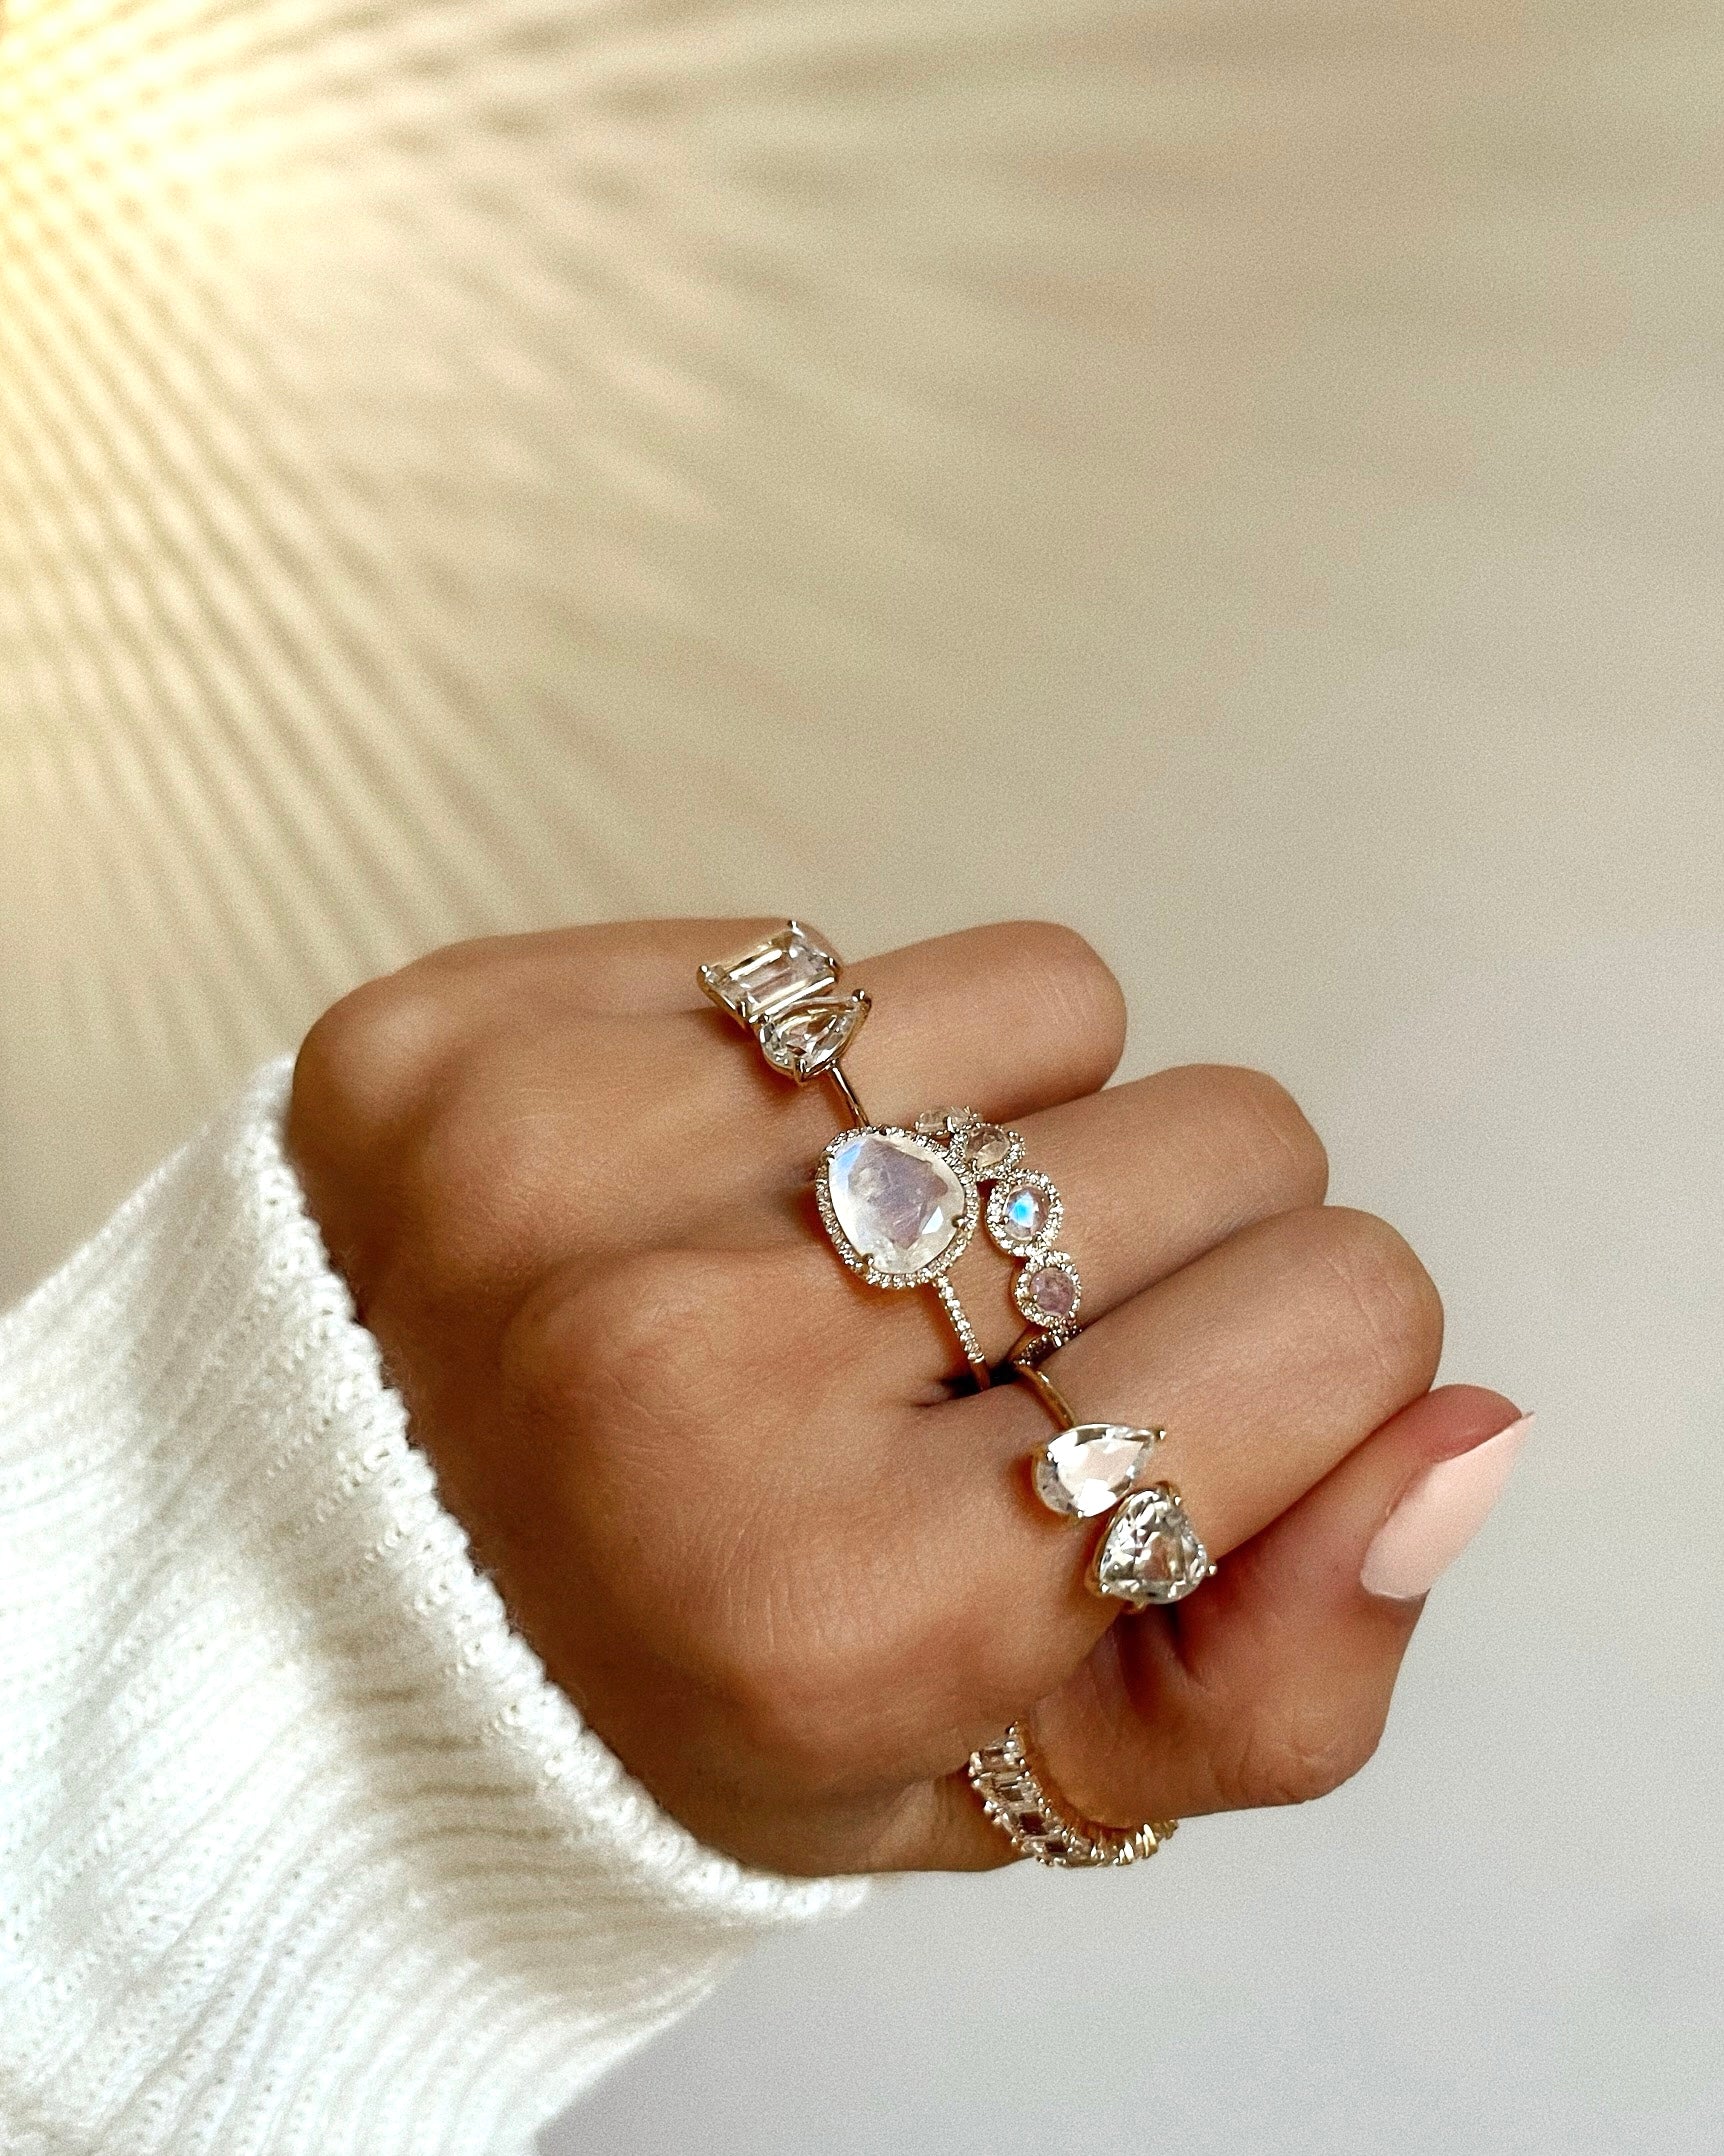 Buy Heart Shaped Diamond Ring | kasturidiamond